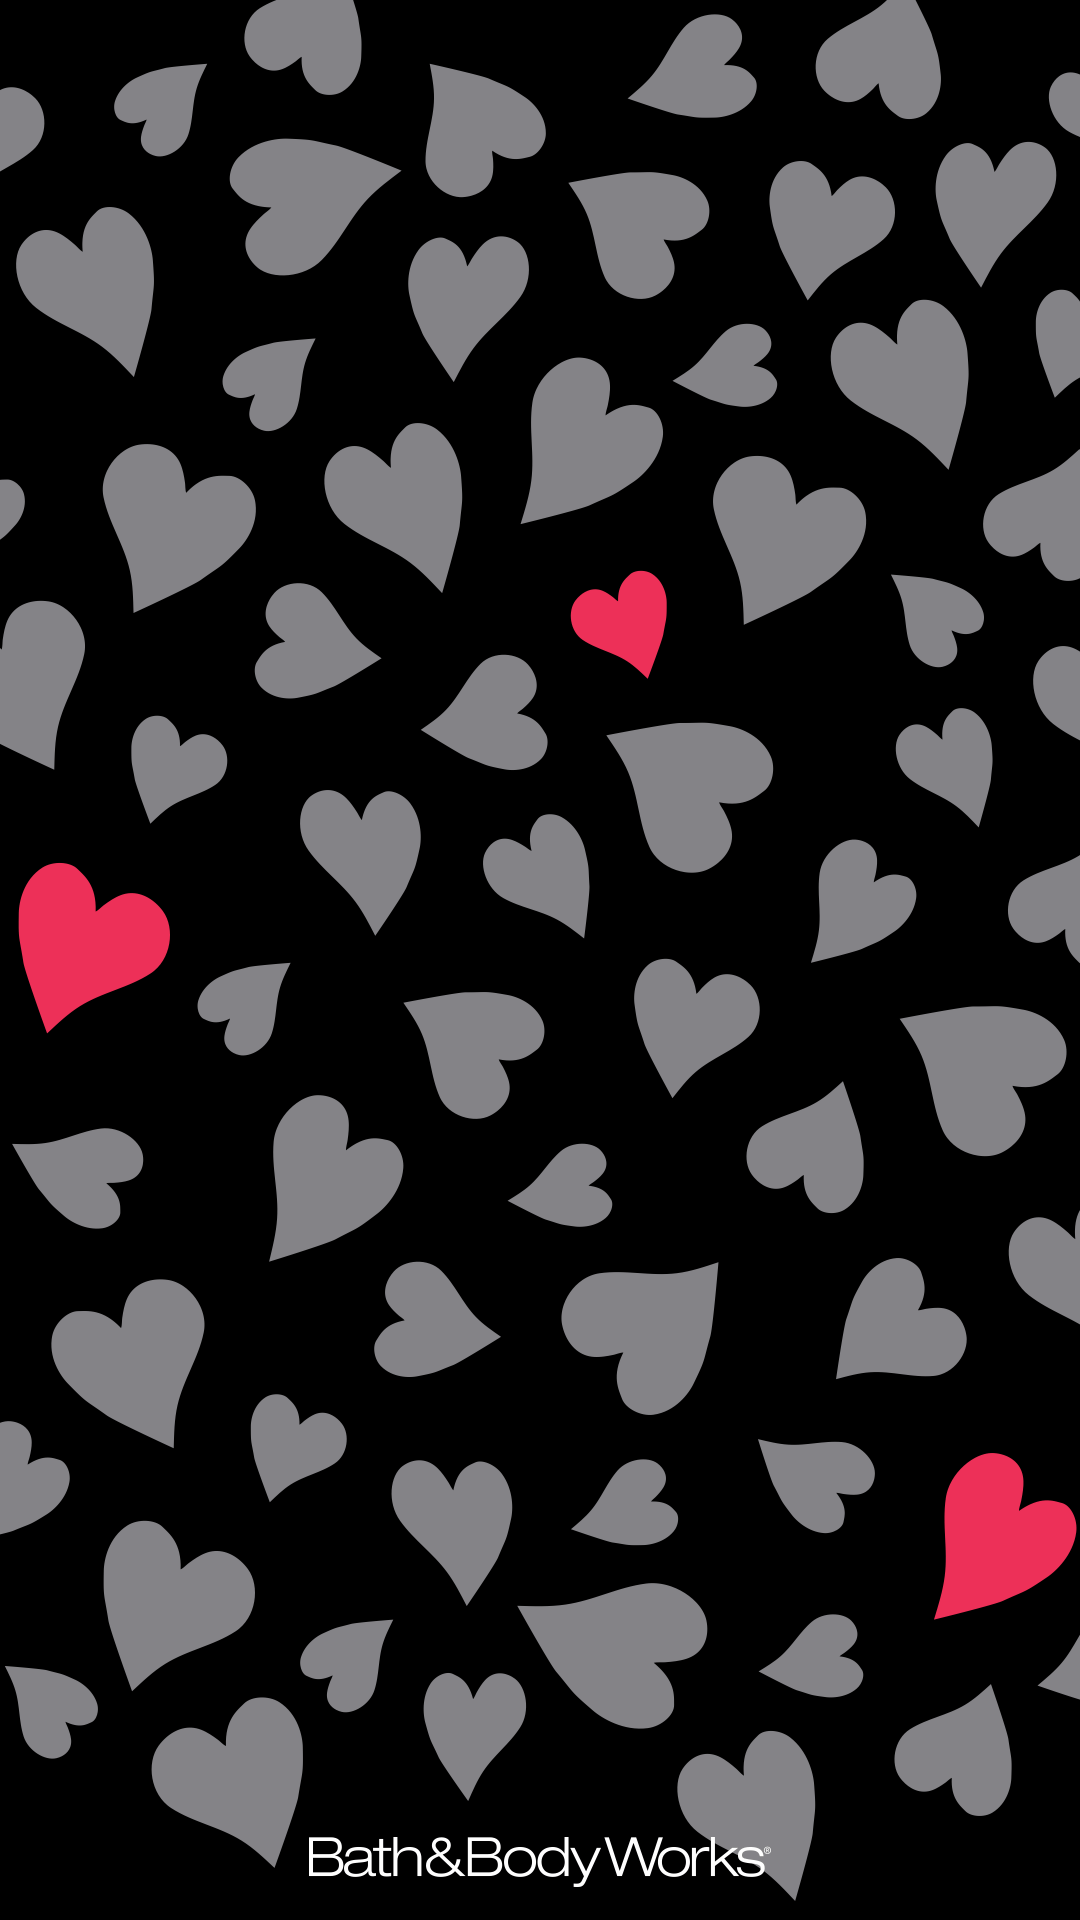 Dark Heart Iphone Wallpapers